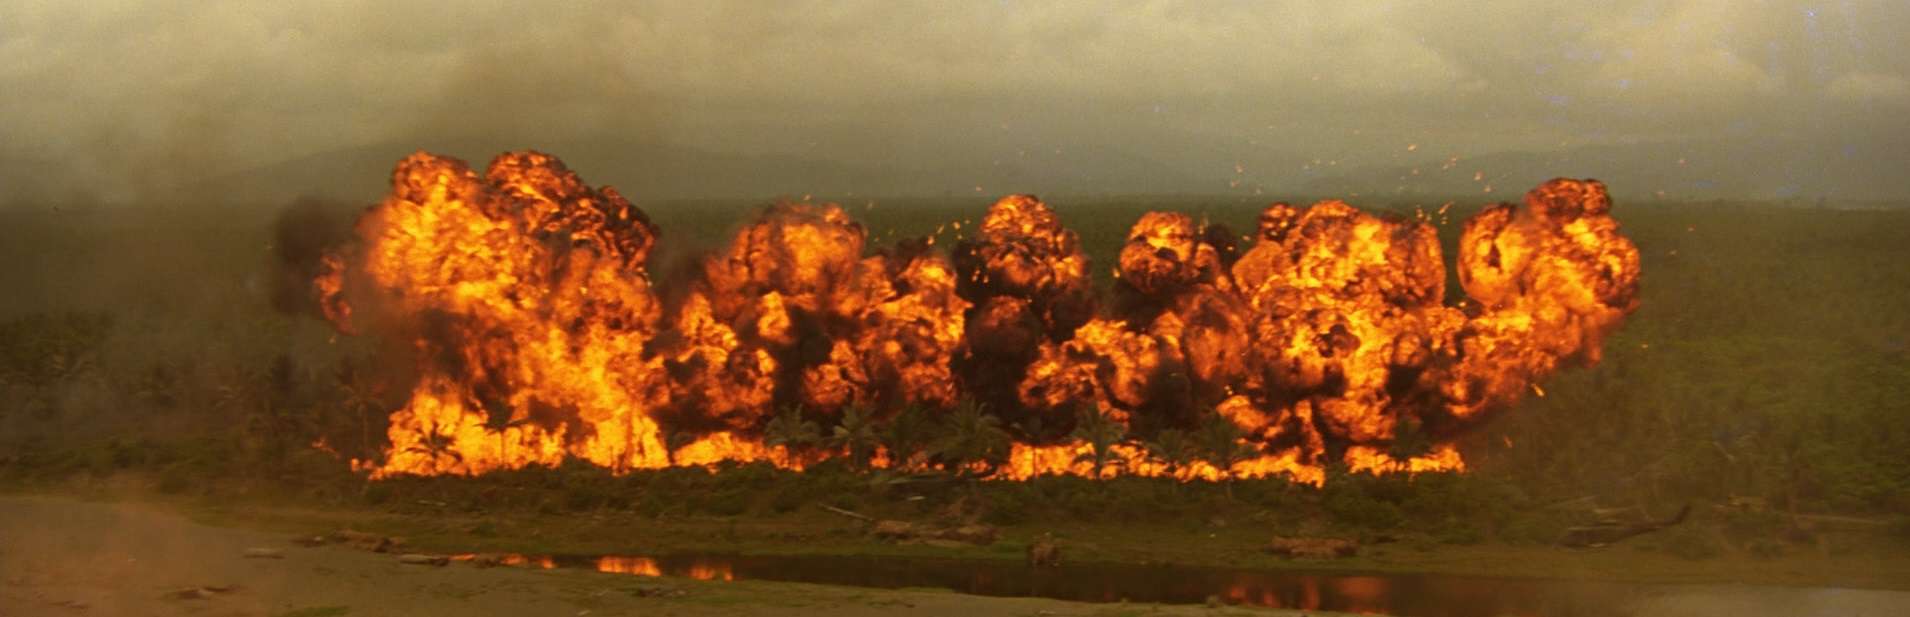 Apocalypse Now - opening scene in movie